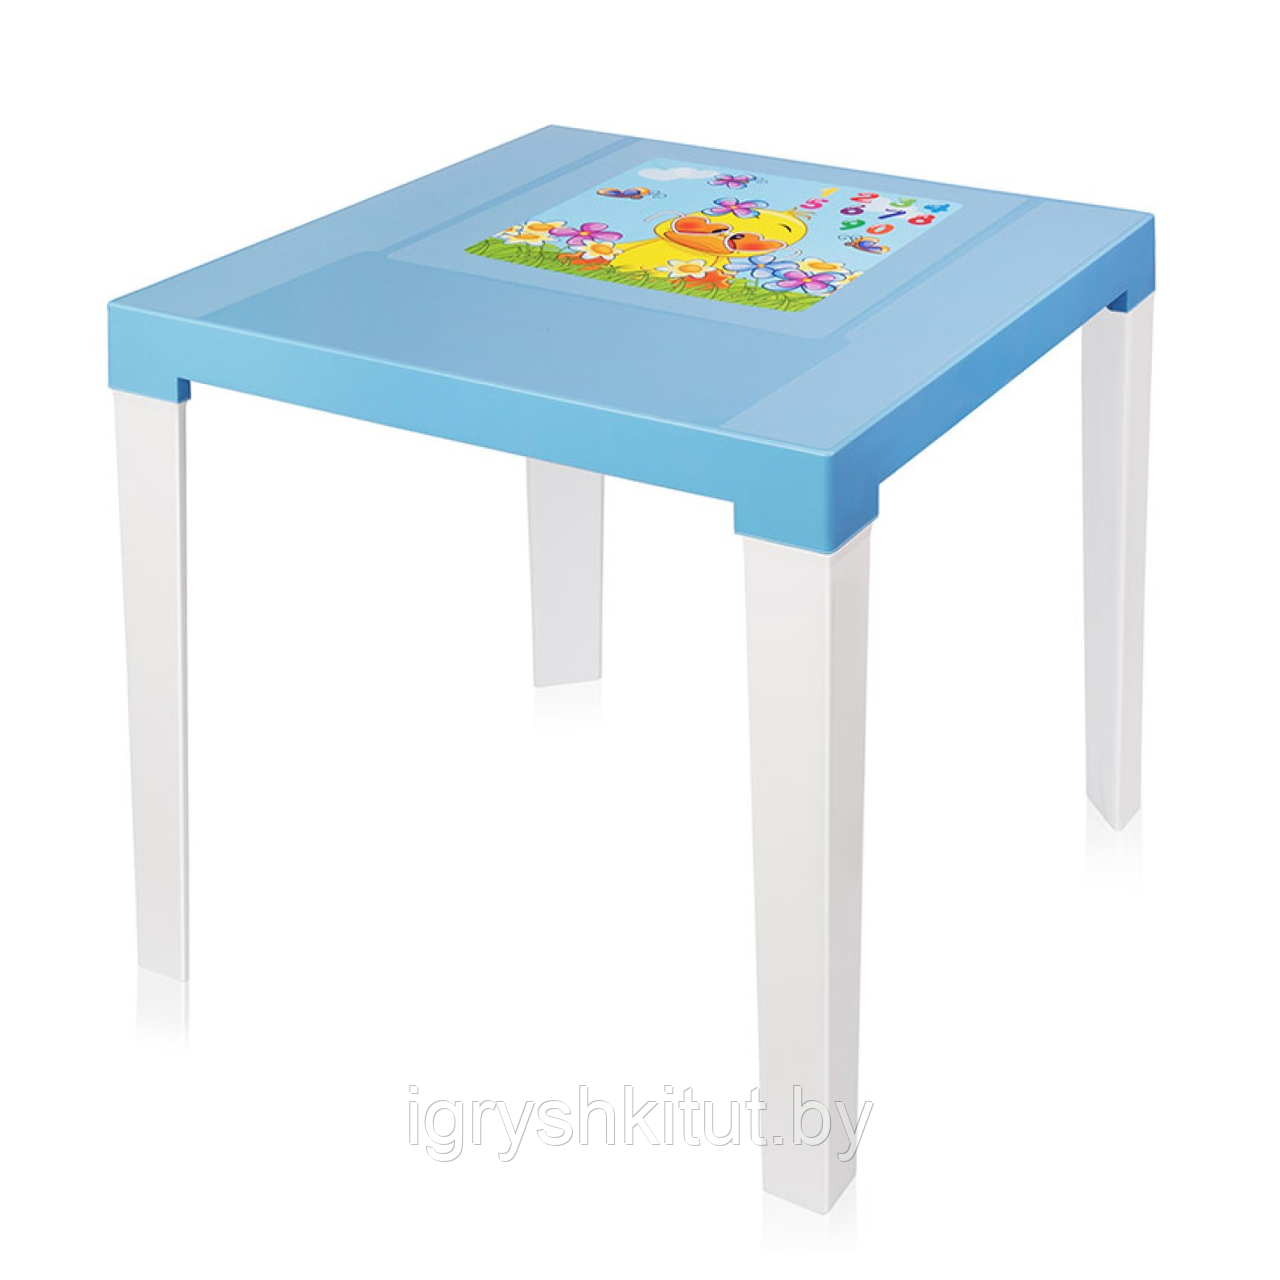 Стол пластиковый детский Аладдин 51х46.5 см, голубой